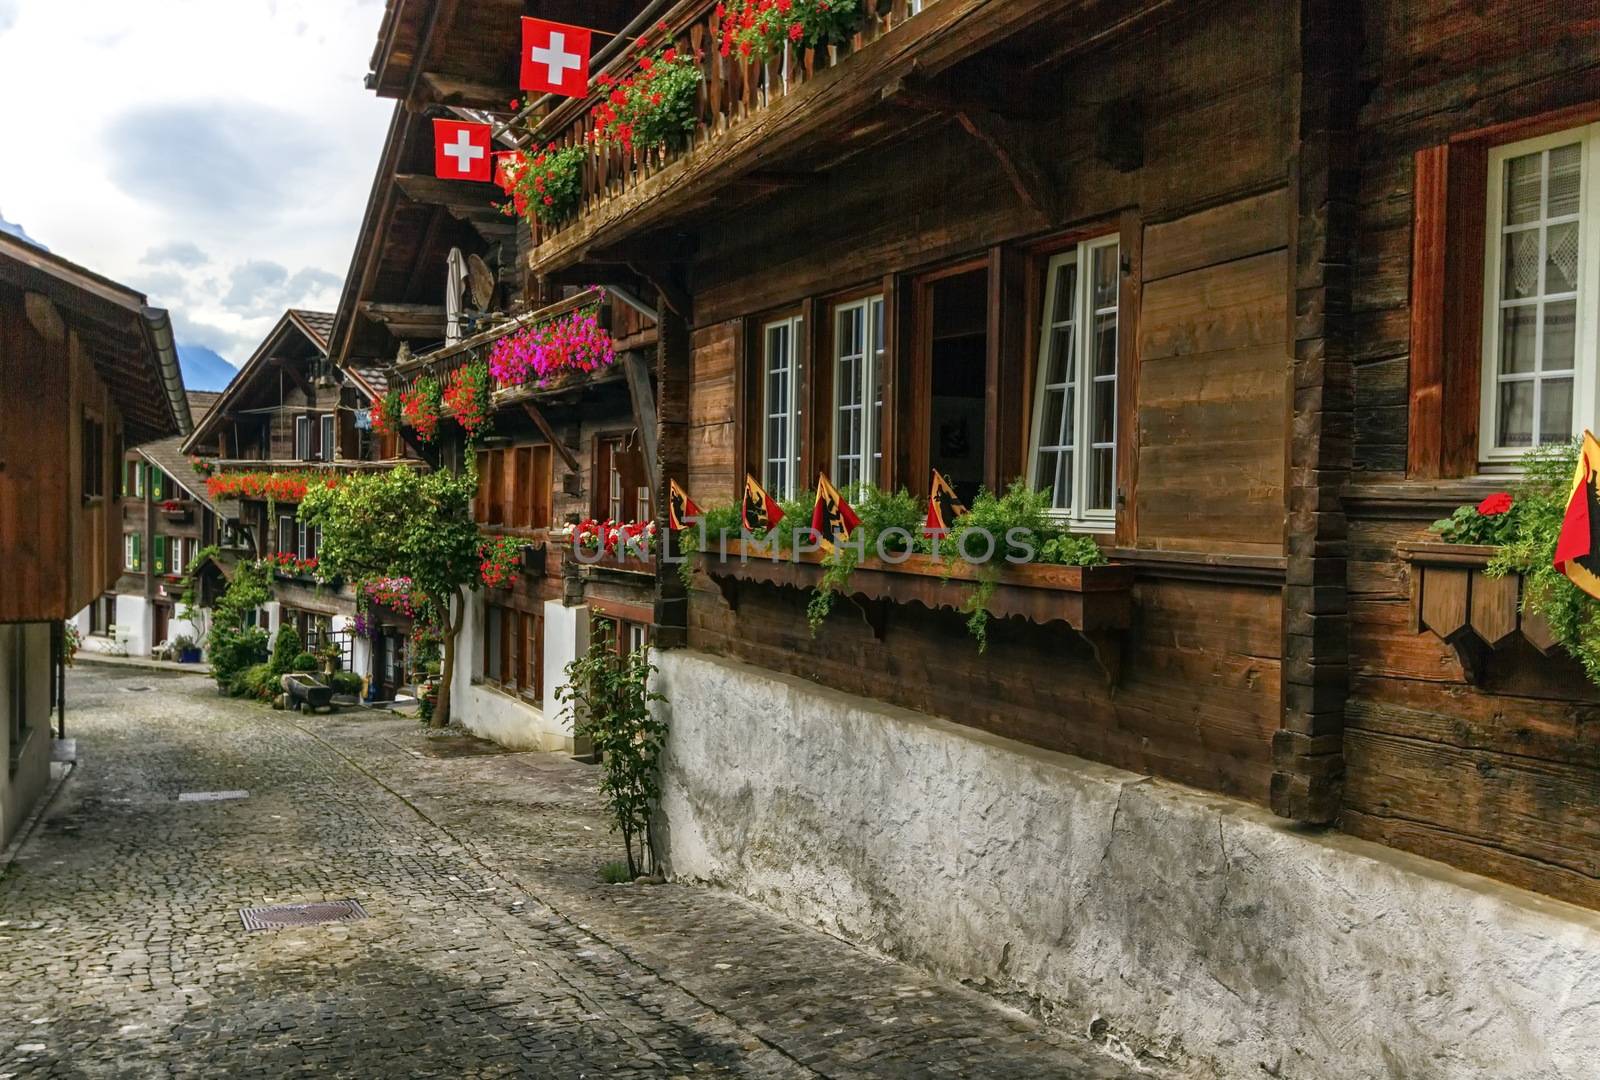 Brienz village, Berne canton, Switzerland by Elenaphotos21